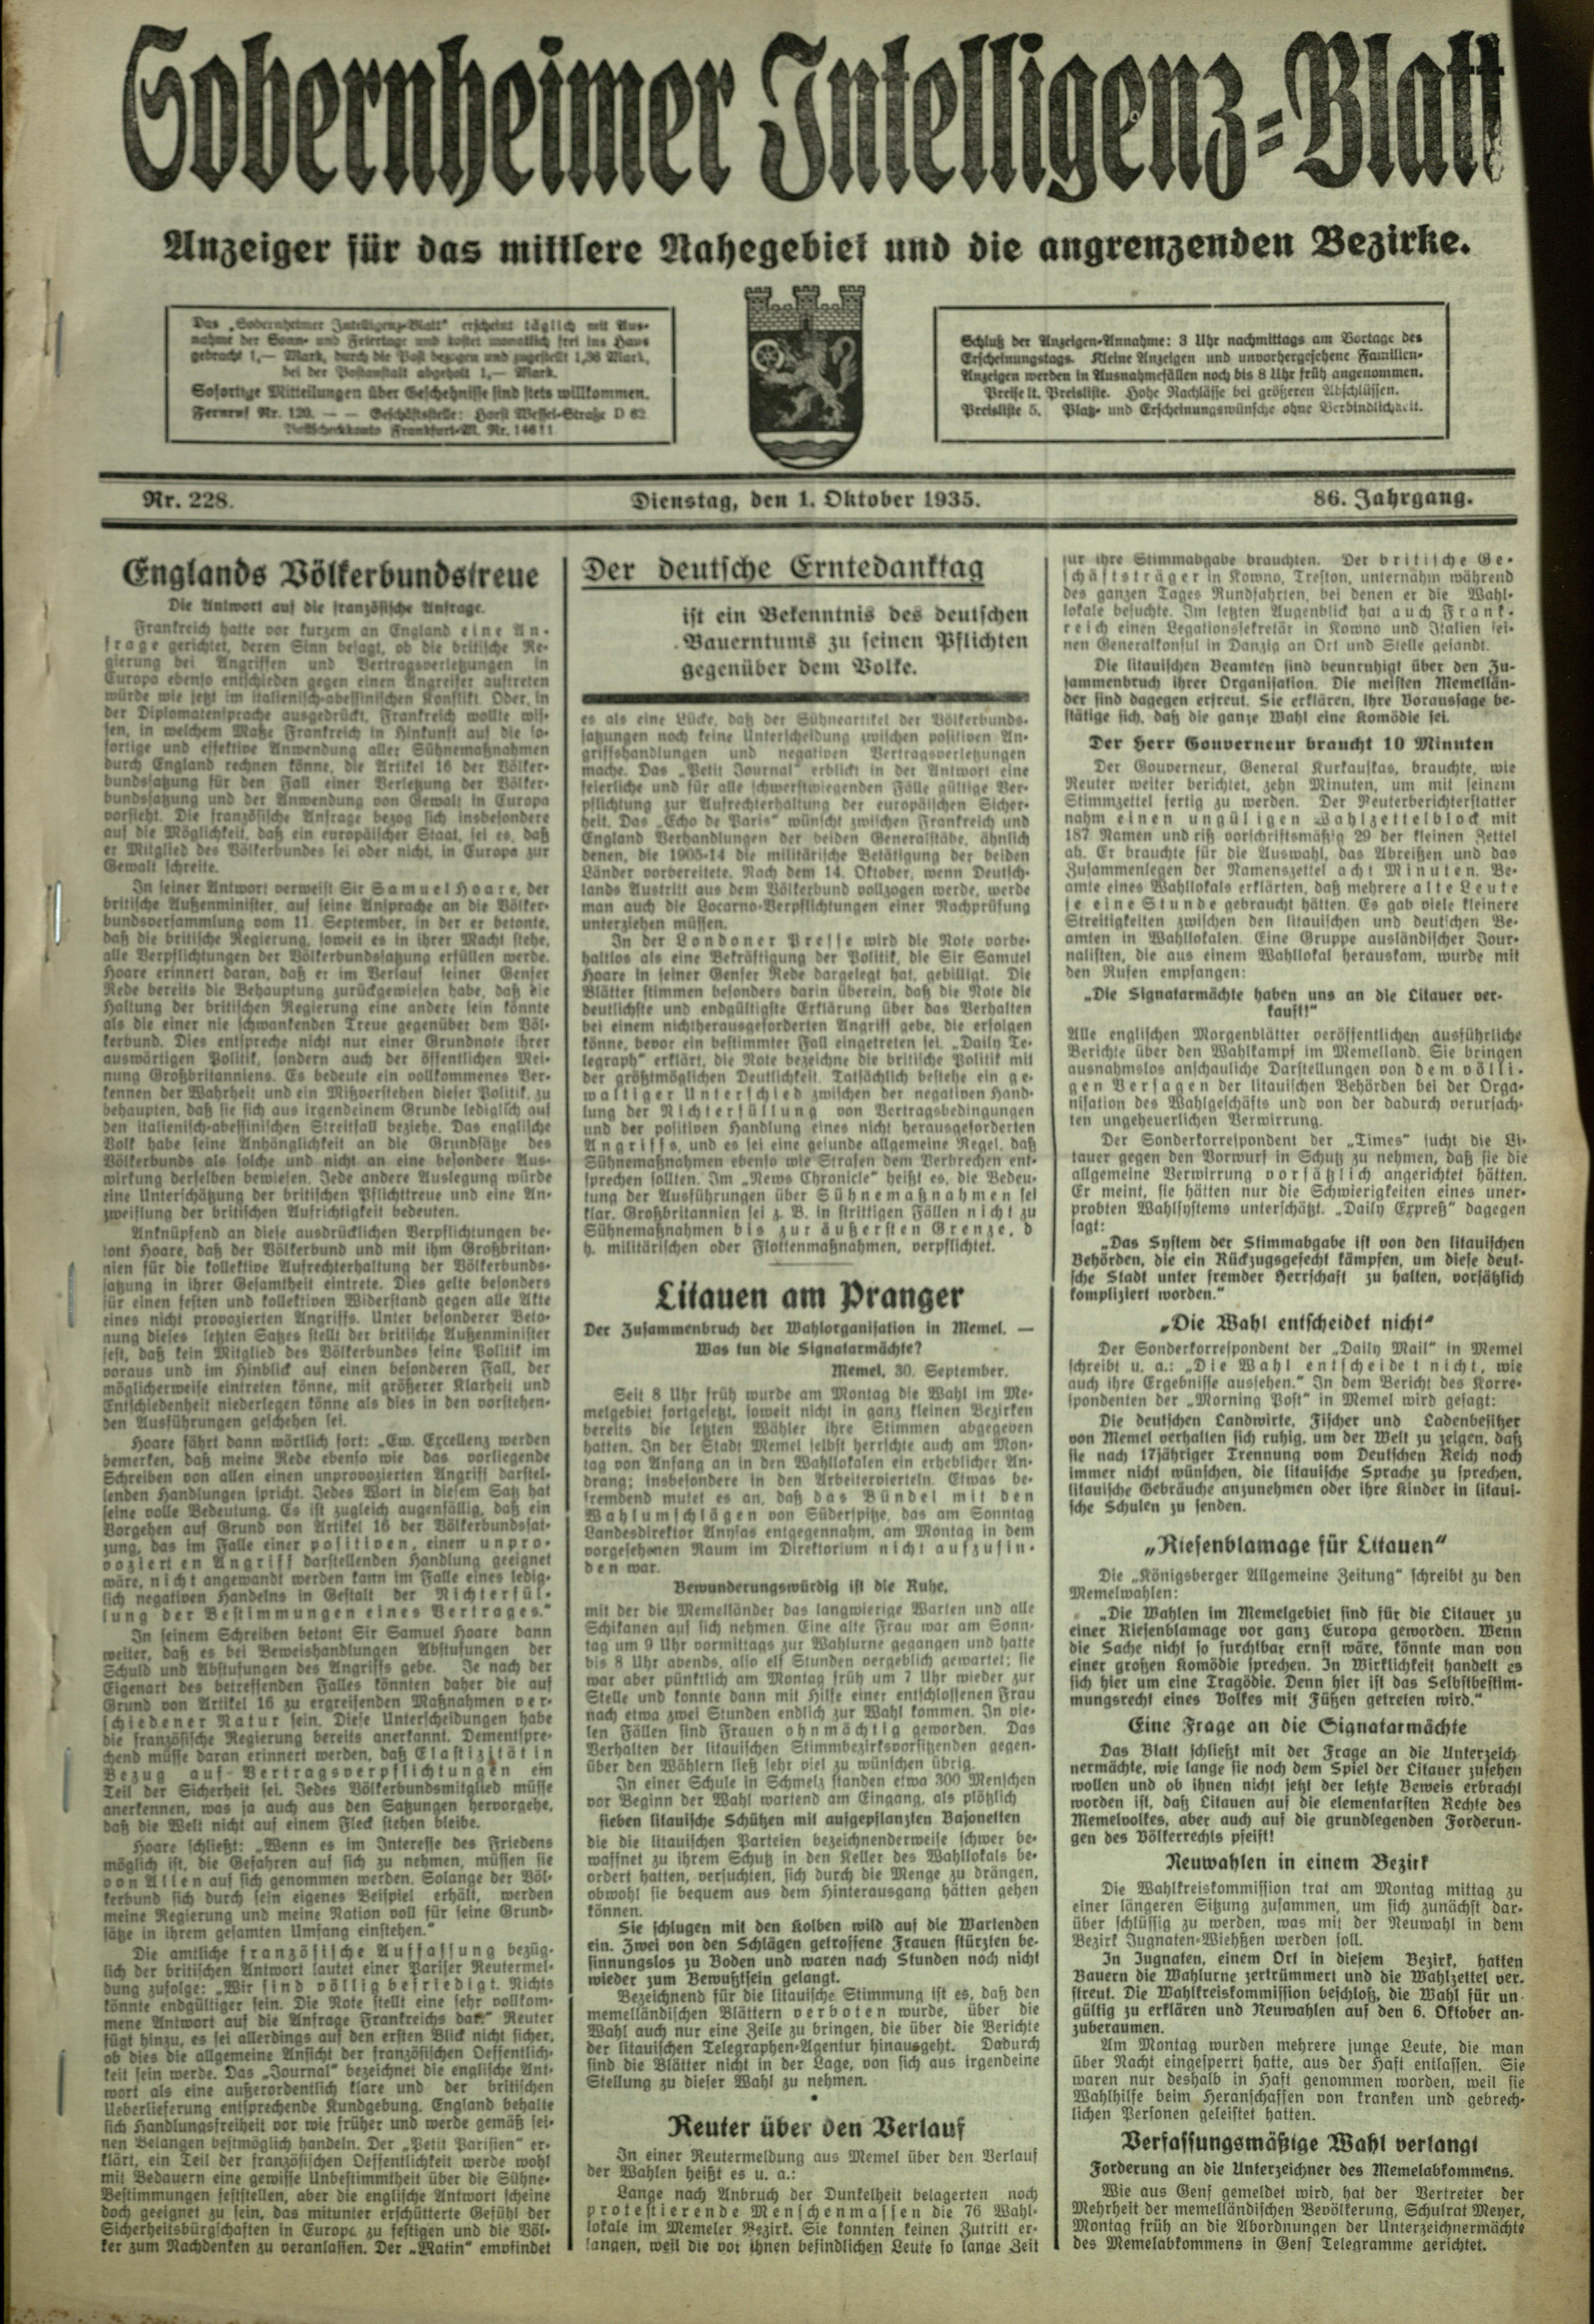 Zeitung: Sobernheimer Intelligenzblatt; Oktober 1935, Jg. 86 Nr. 228 (Heimatmuseum Bad Sobernheim CC BY-NC-SA)